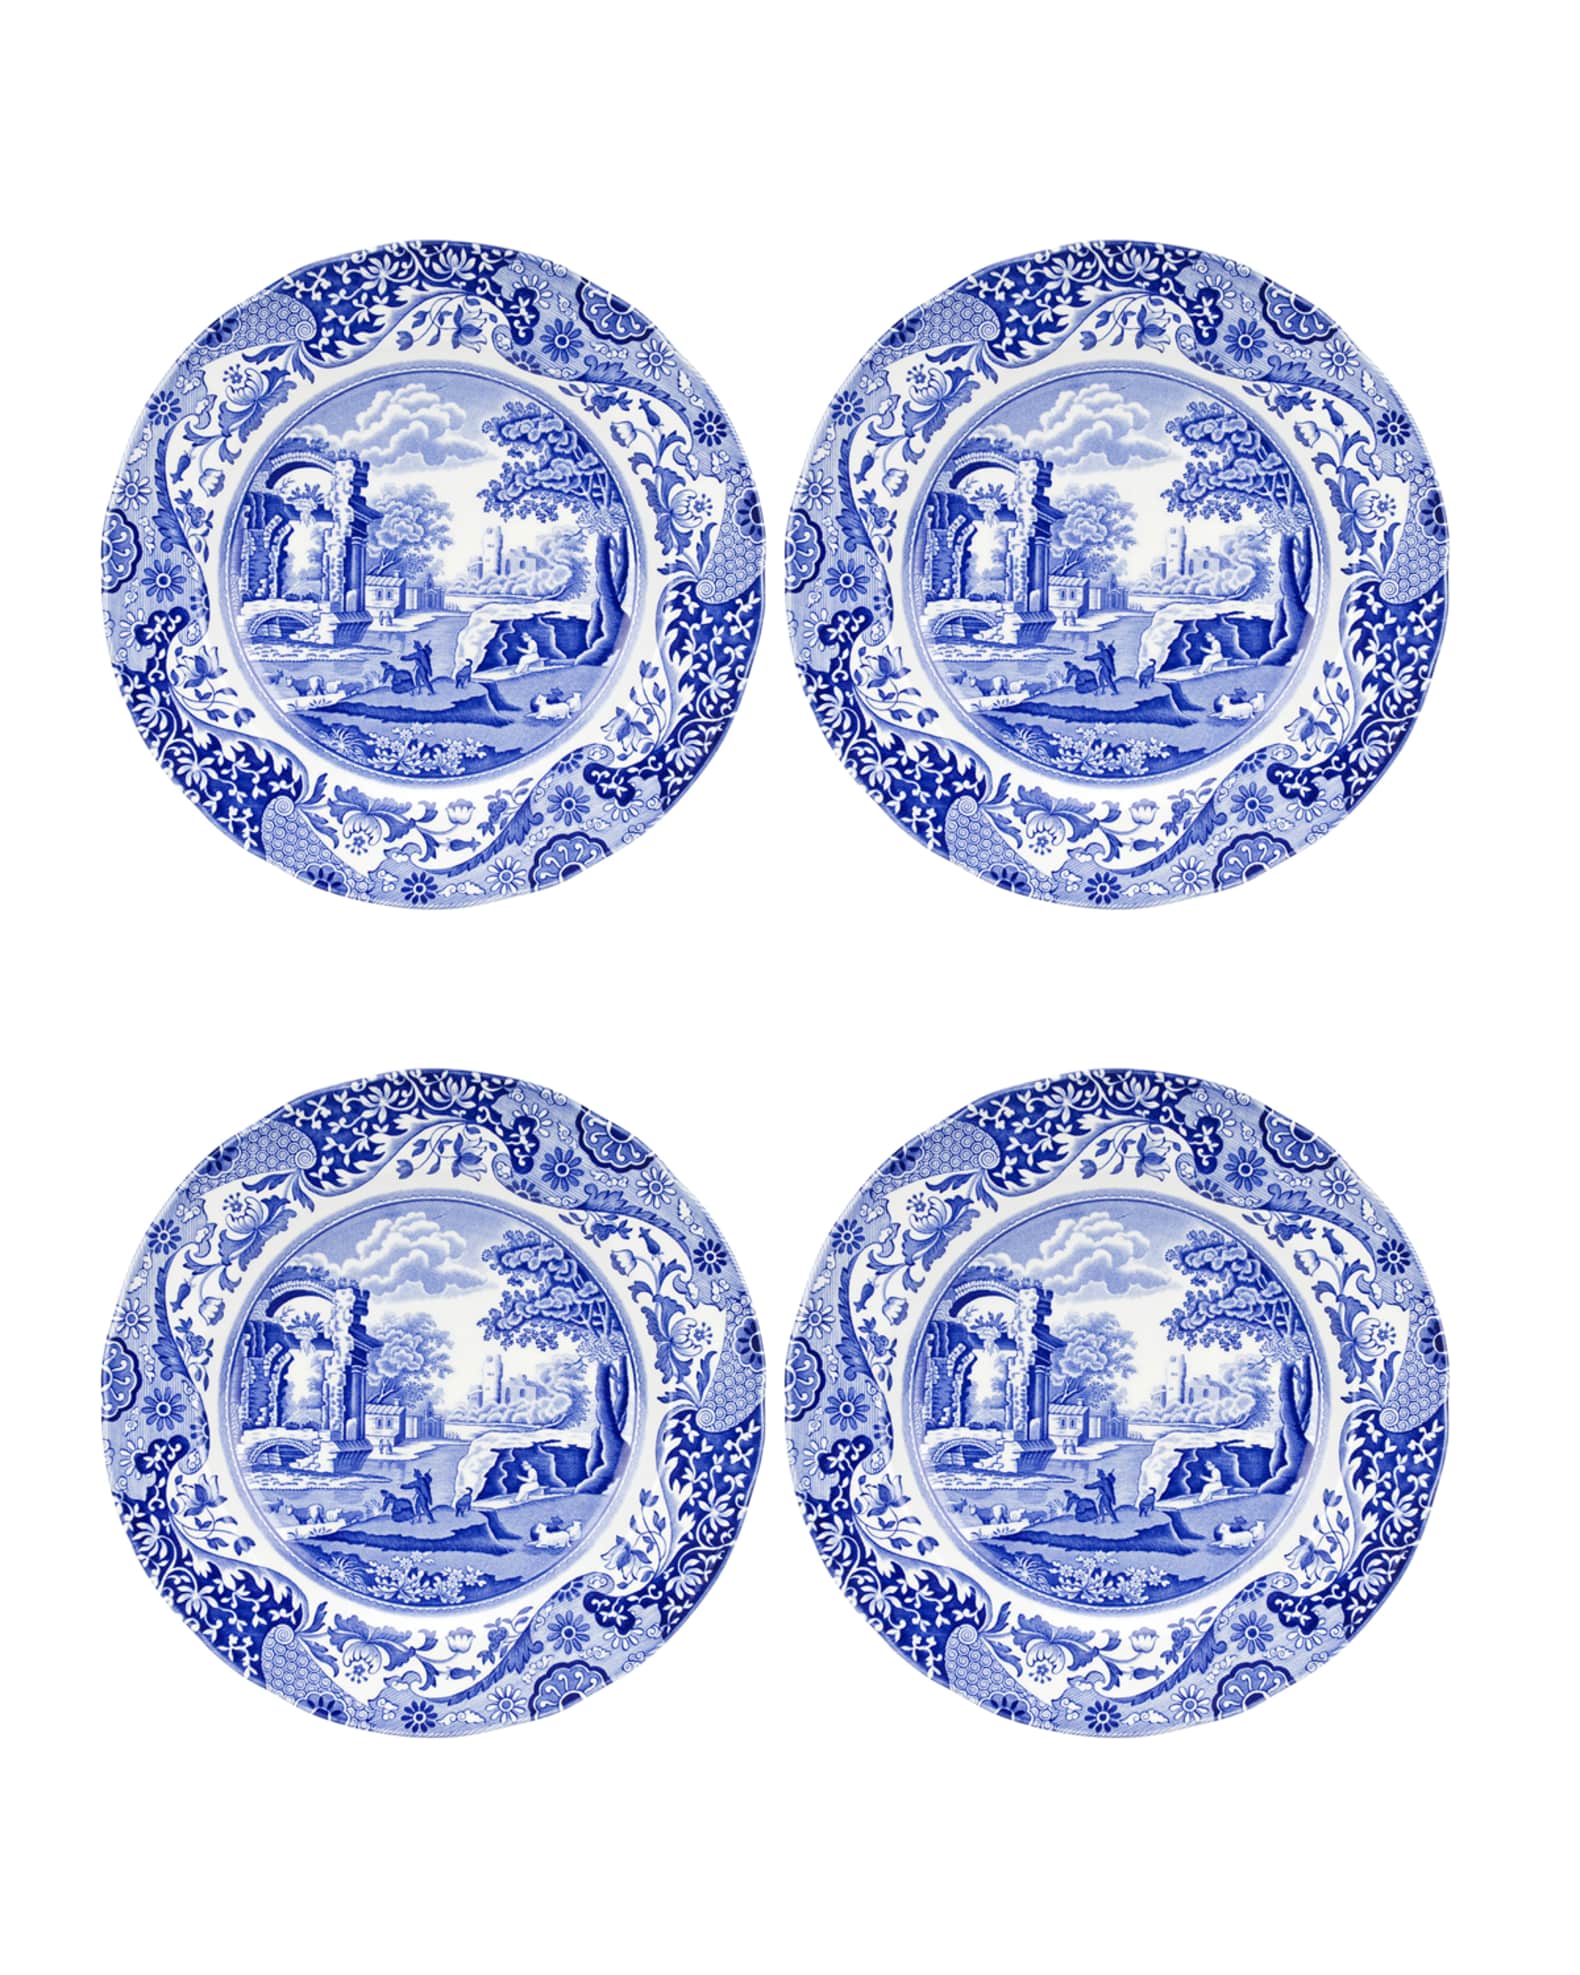 Spode Blue Italian Dinner Plates, Set of 4